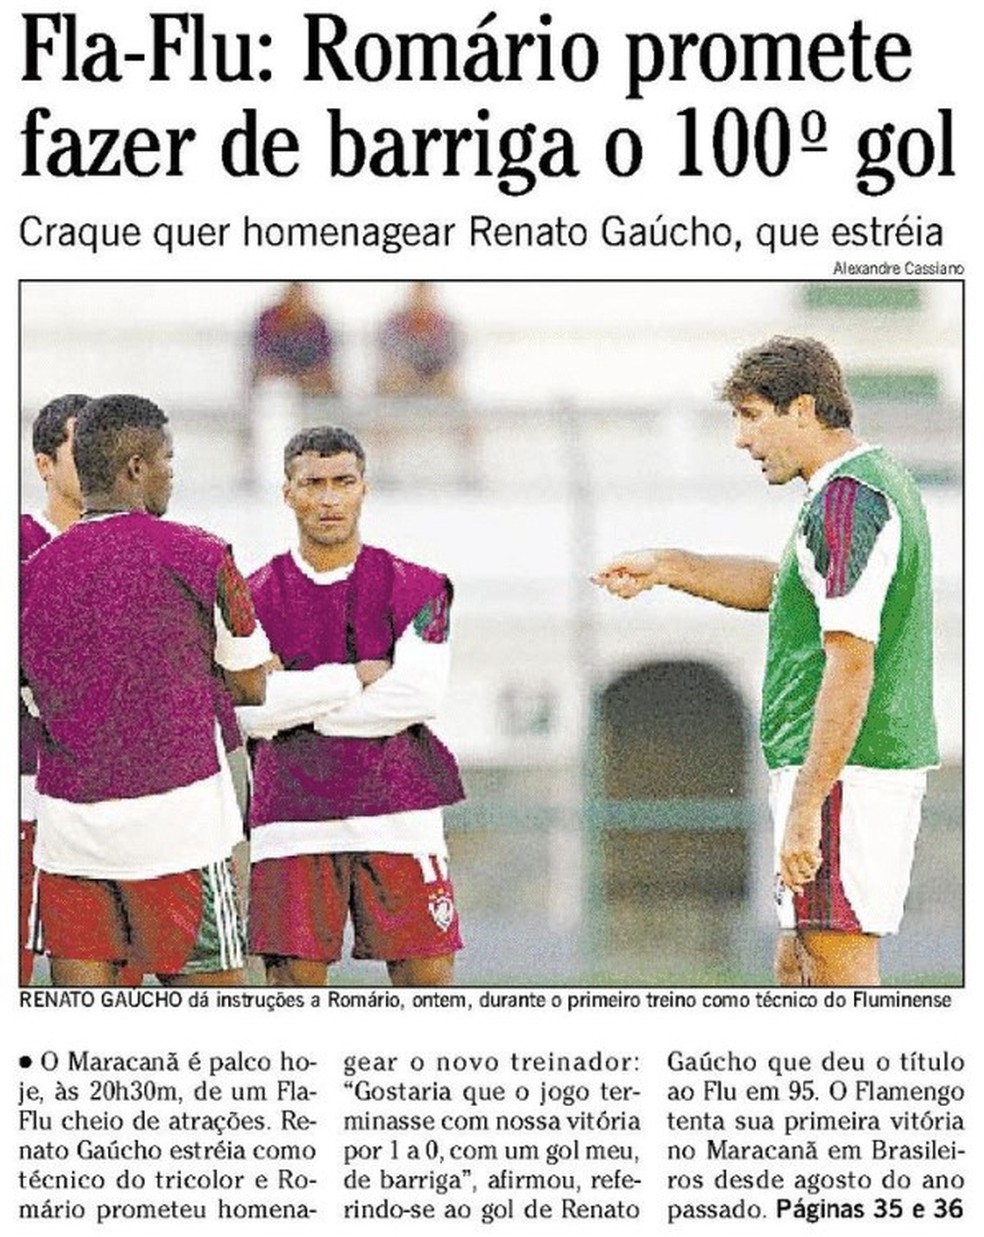 Romário foi capa de "O Globo" dia 4 de setembro, quando o Flamengo o rival goleou por 5 a 2 — Foto: Acervo o Globo